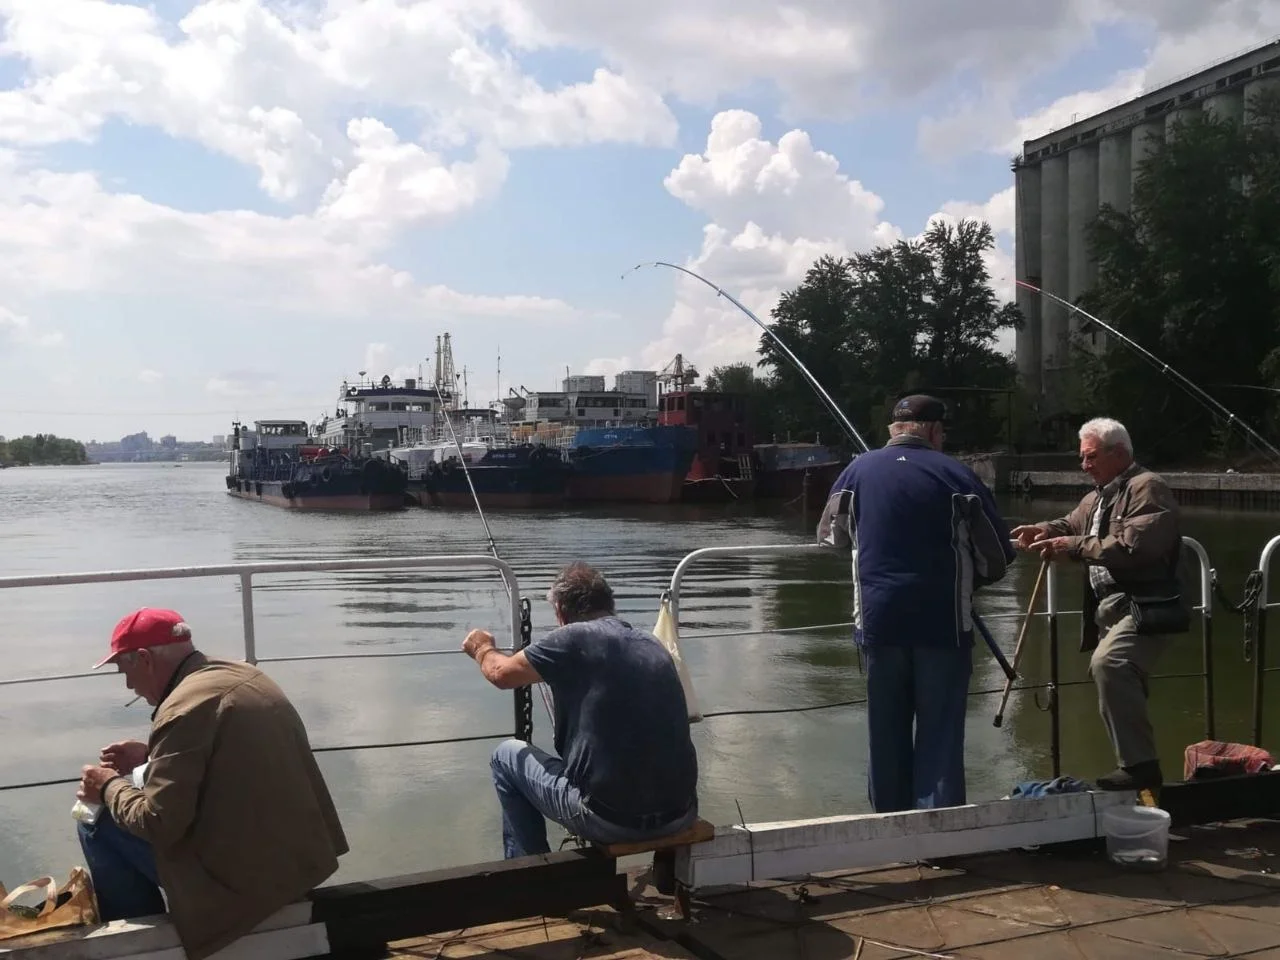 Невероятного размера щуку выловил рыбак в Ростовской области